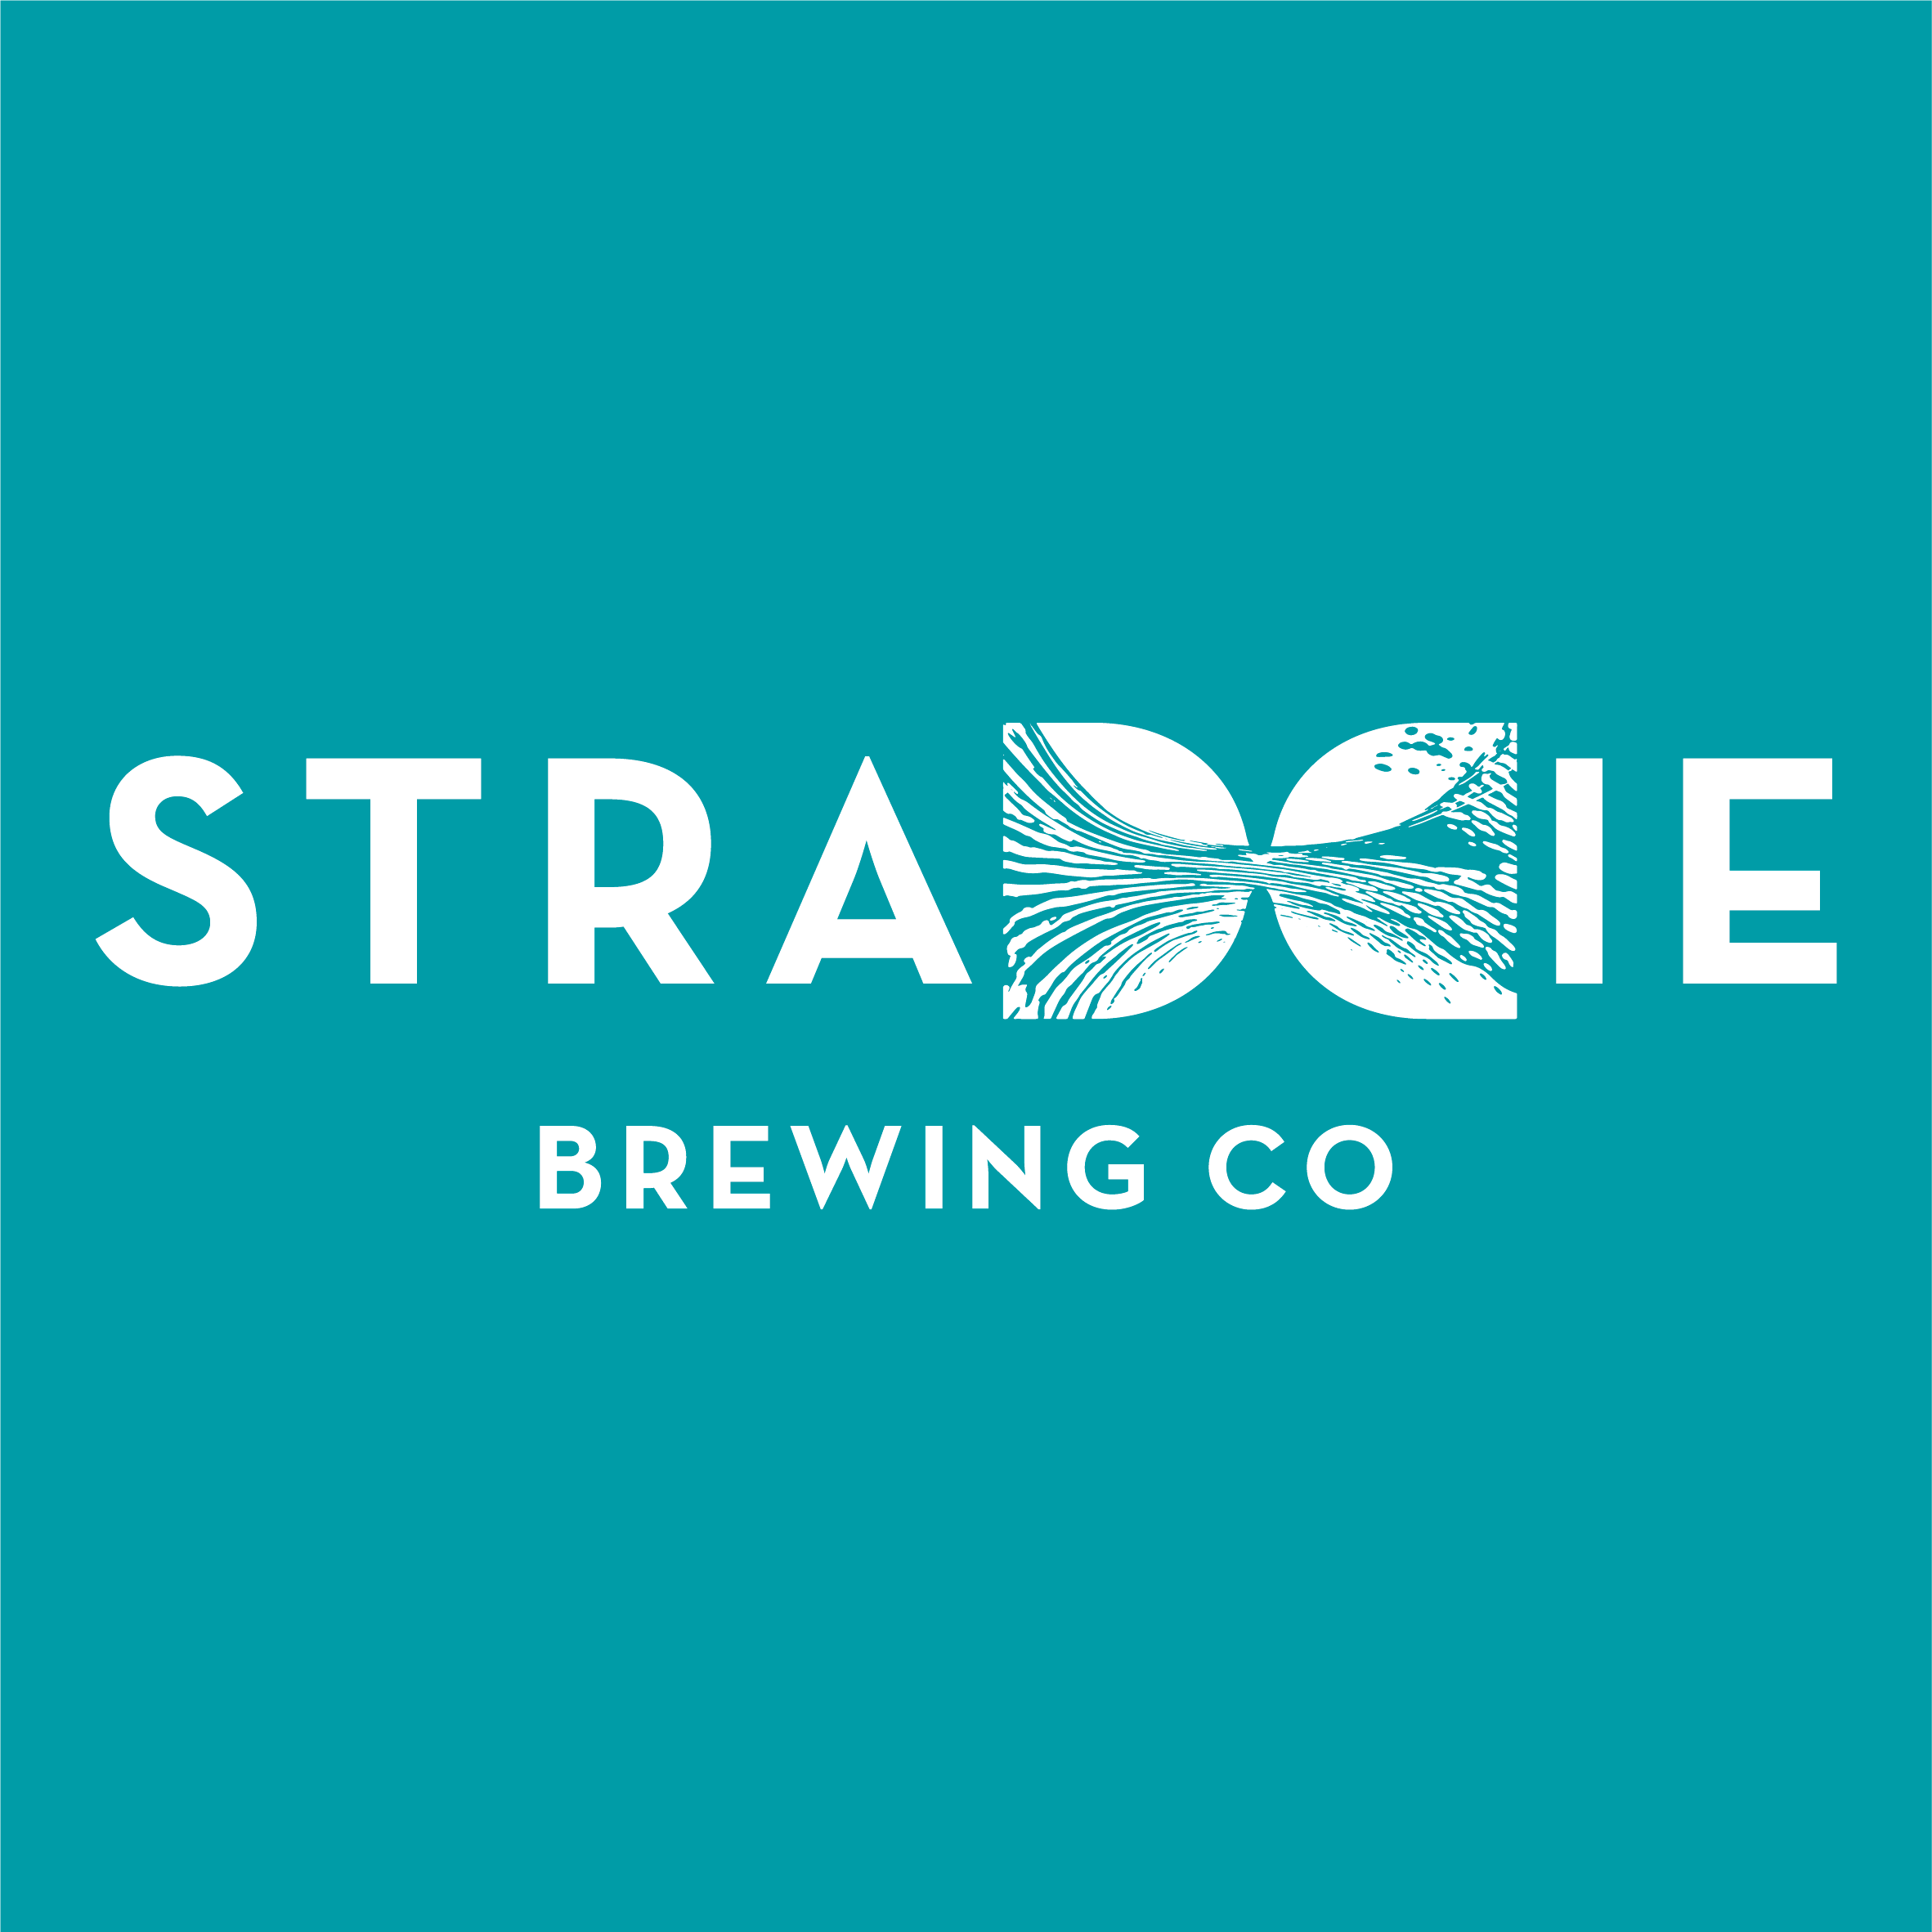 Straddie Brewing Co